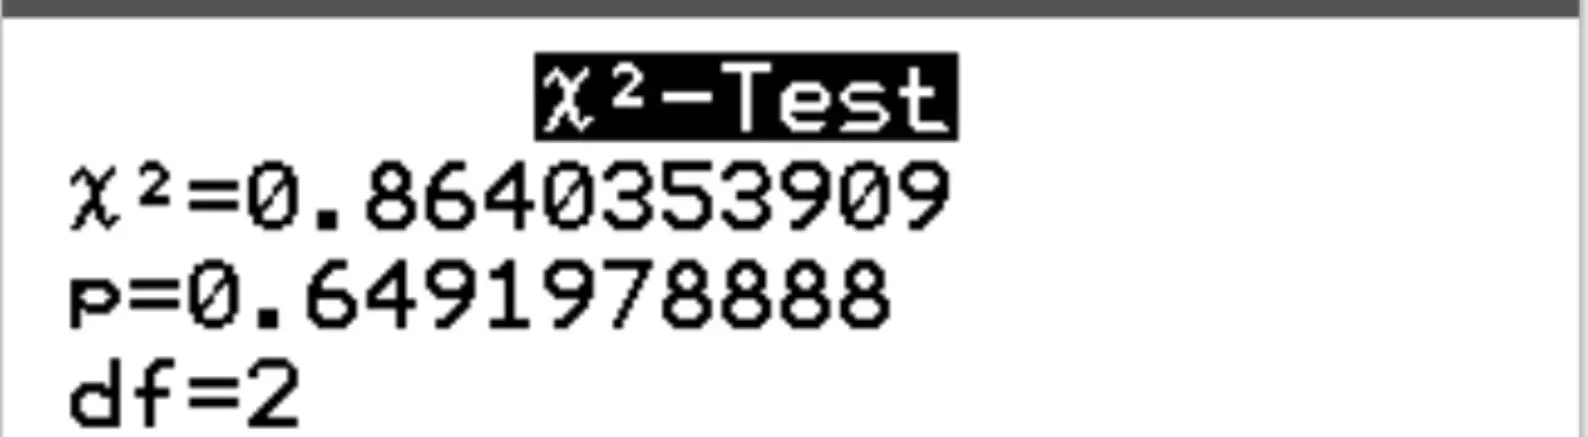 Risultati del test di indipendenza chi-quadrato su una calcolatrice TI-84